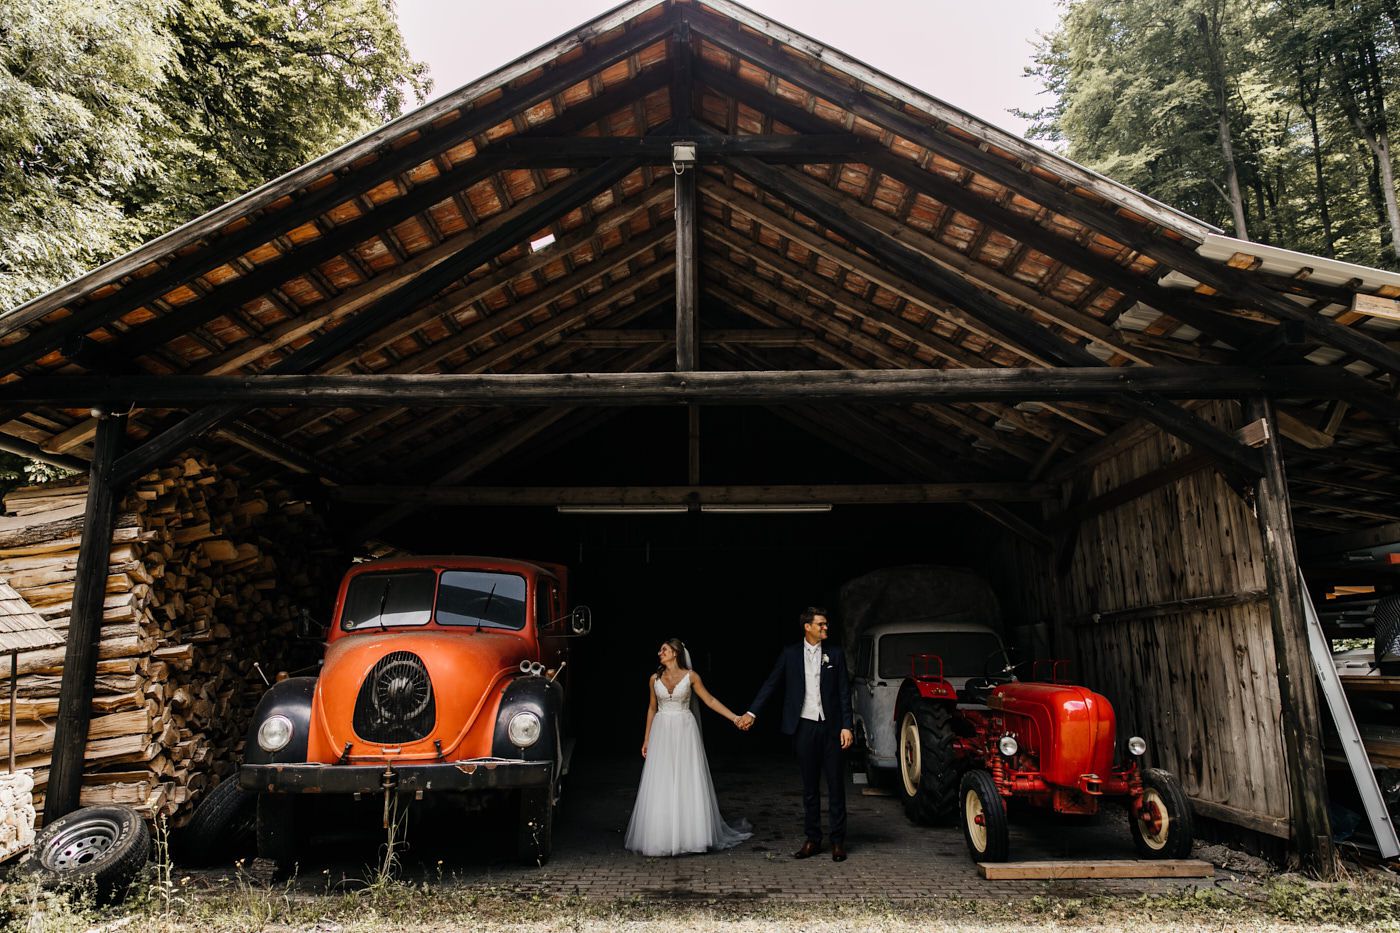 Hochzeitstag. Brautpaar-Shooting in der Scheune. Das Brautpaar steht in der Scheune zwischen zwei alten Traktoren.